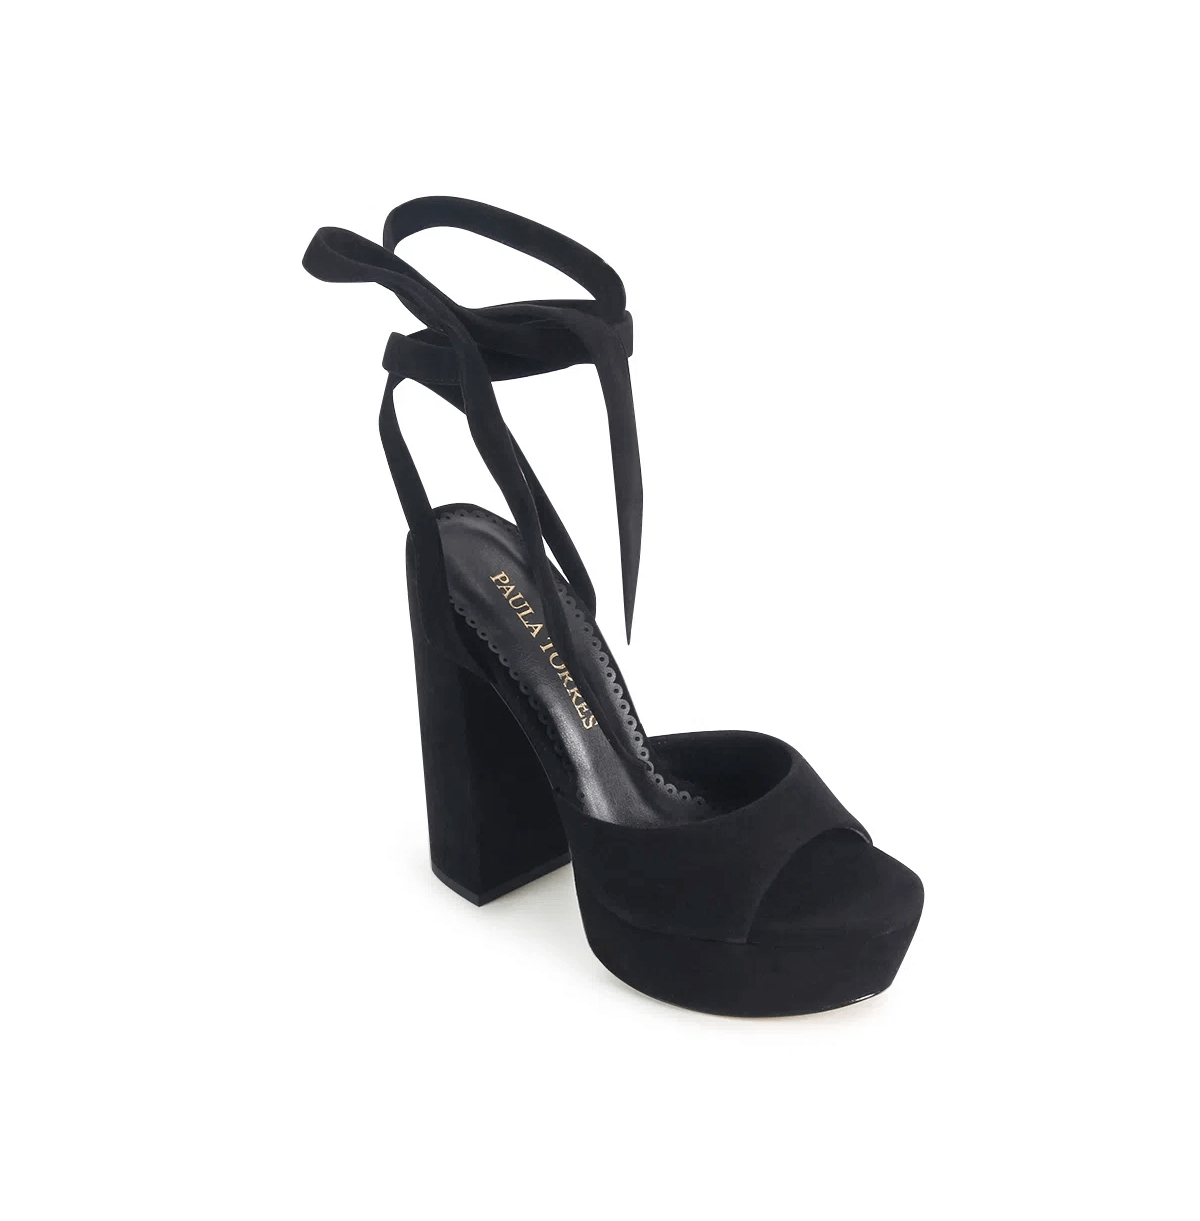 Shoes Women's Cannes Platform Sandals - Black